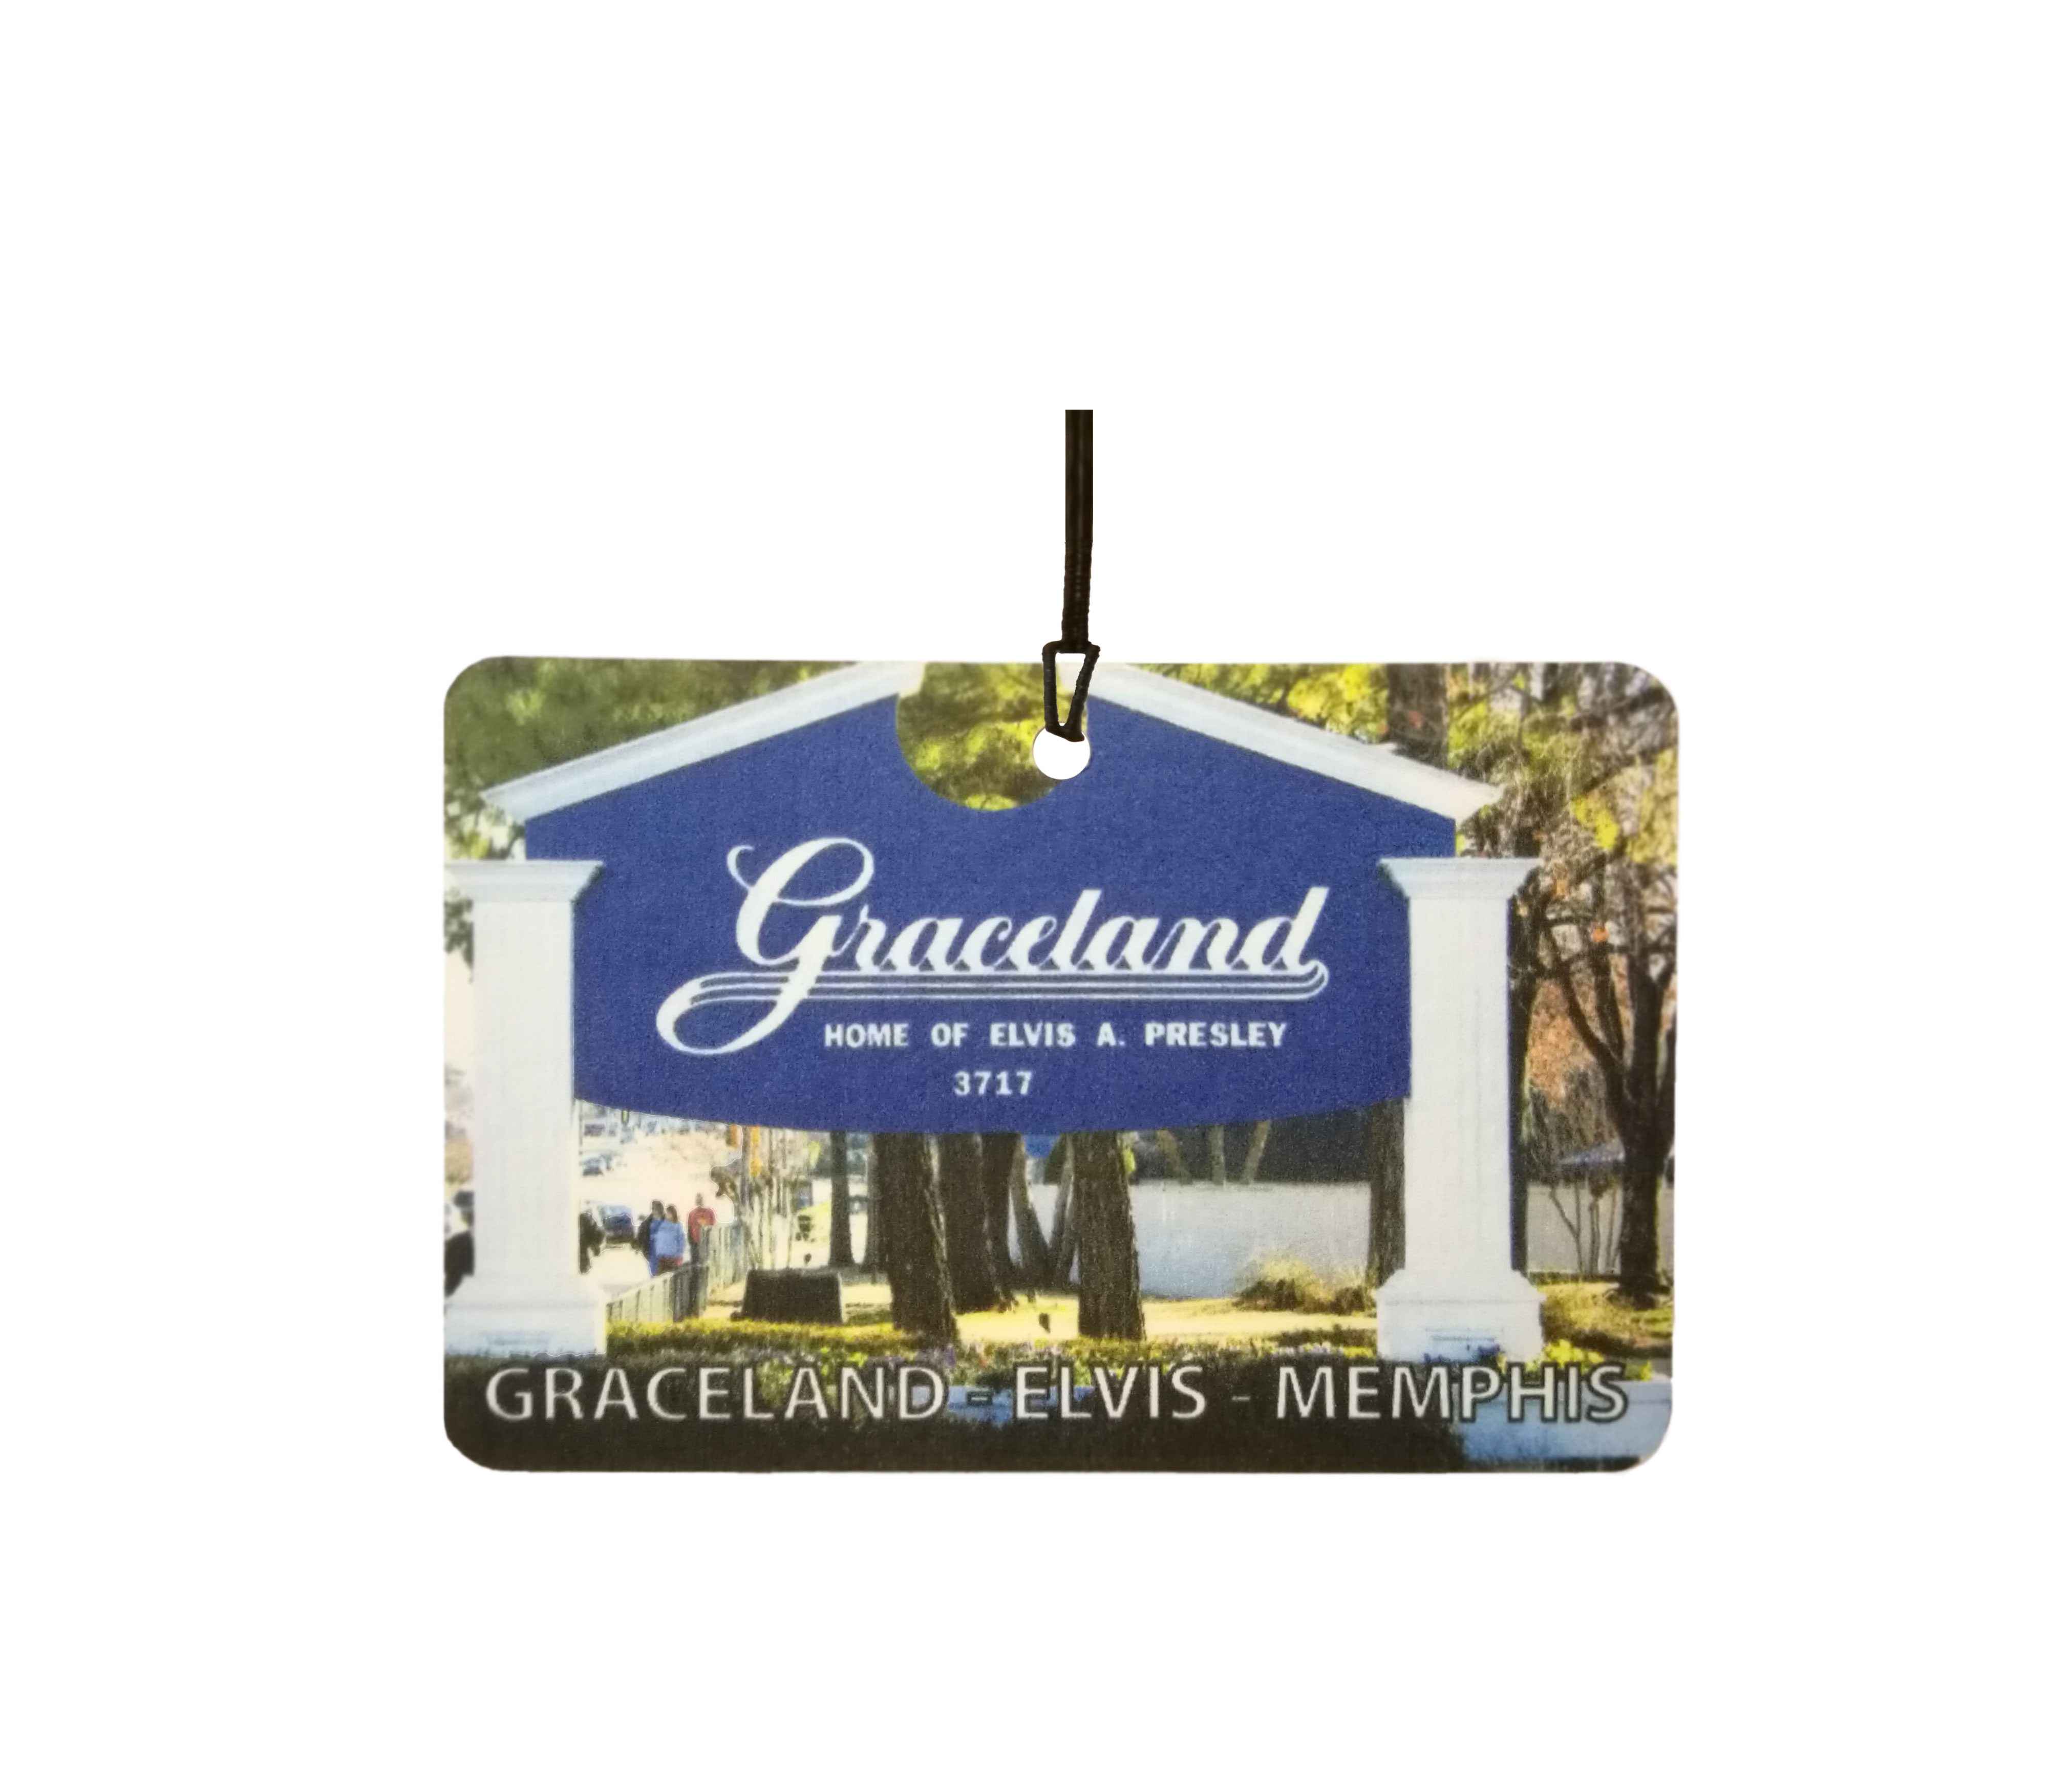 Graceland - Elvis - Memphis